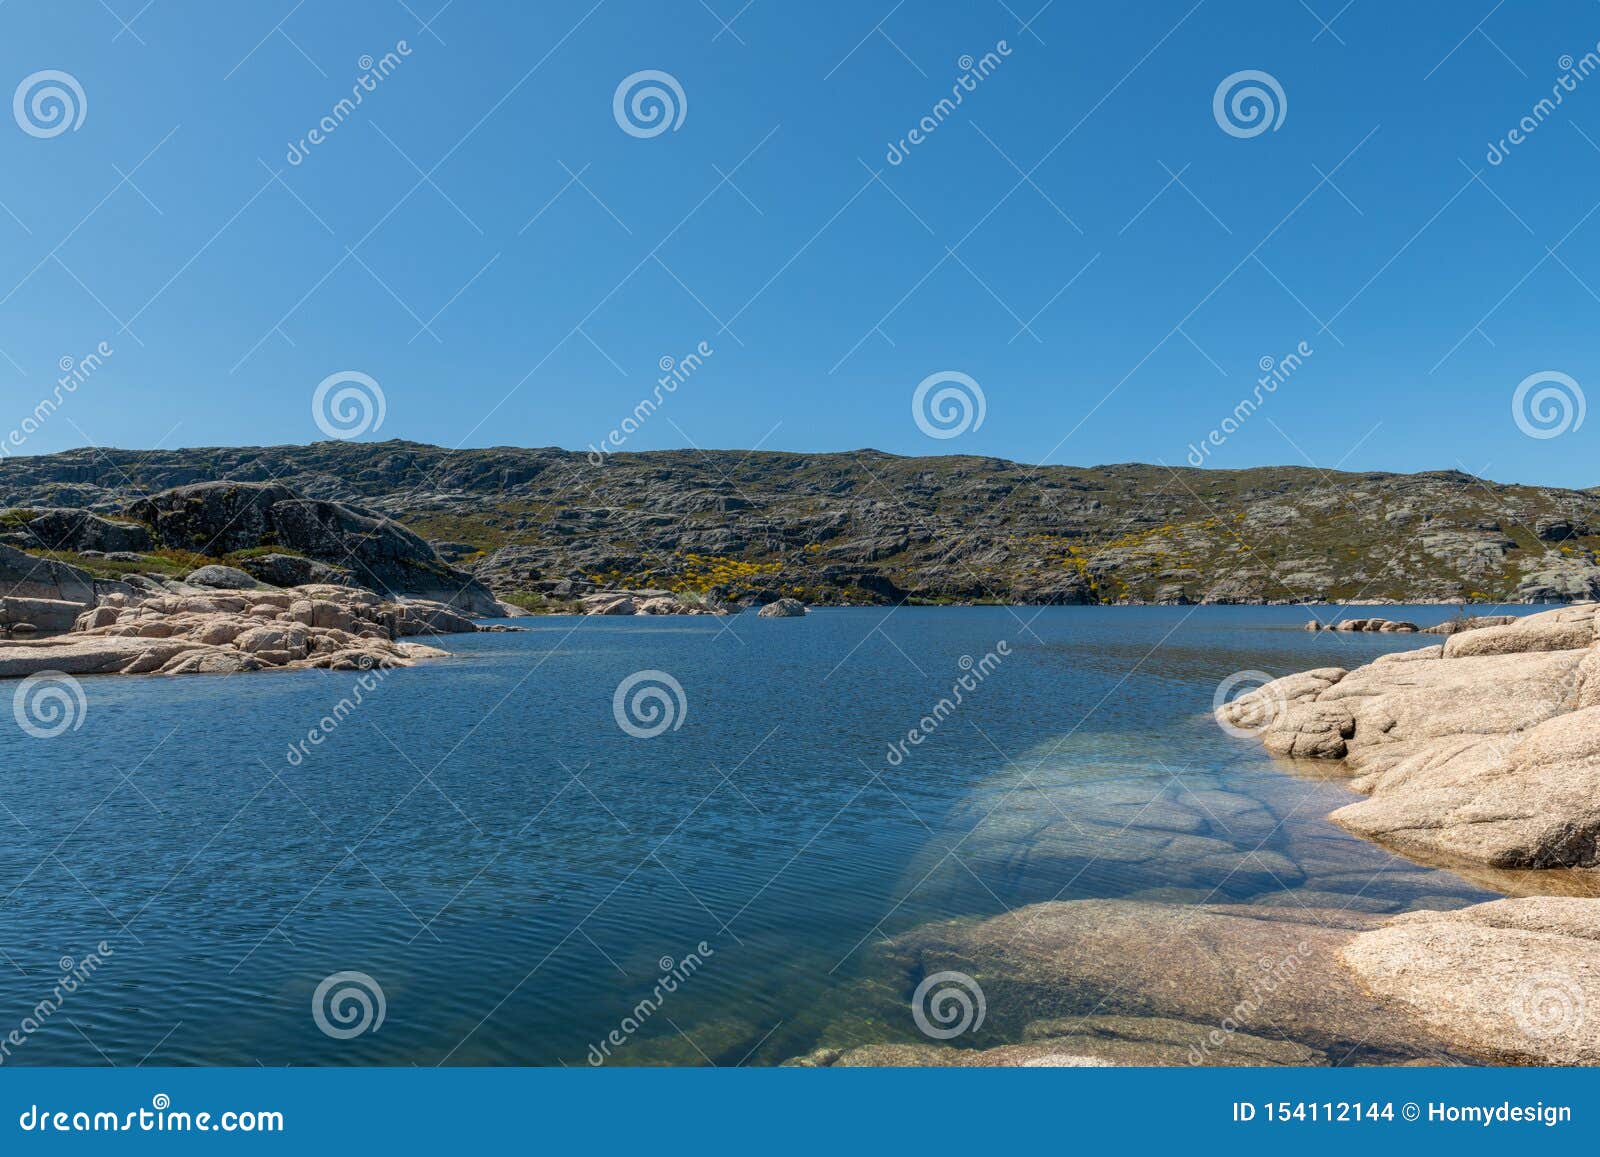 lagoa comprida on serra da estrela natural park, portugal